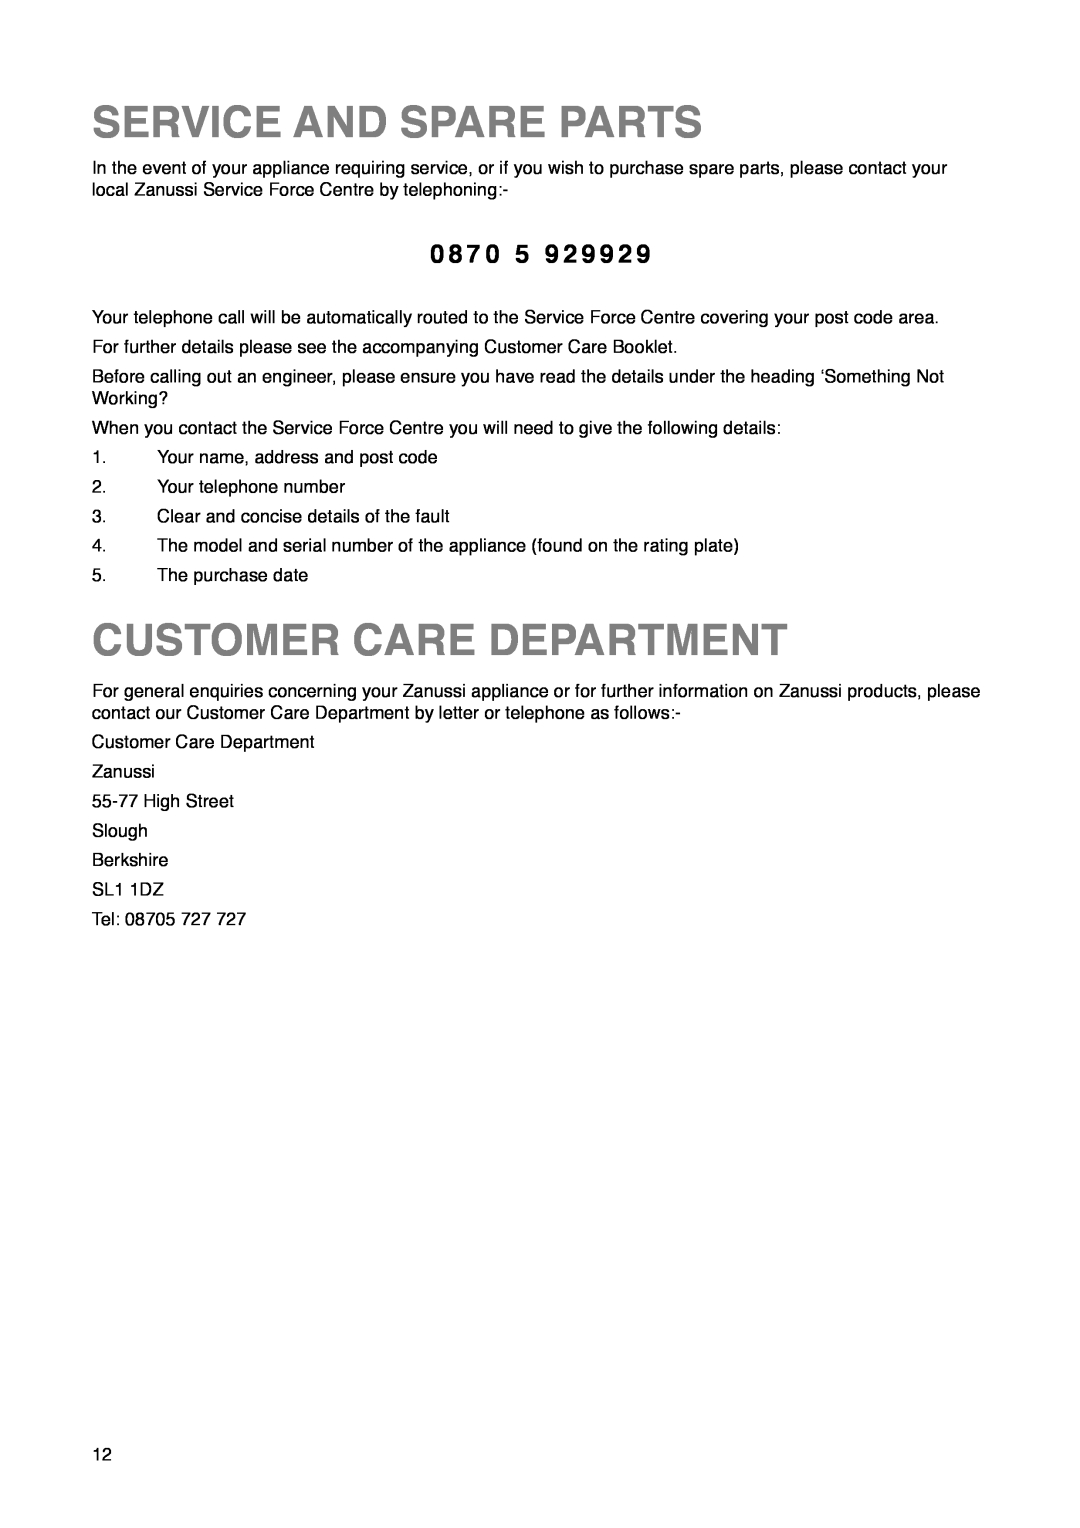 Zanussi ZA 33 Y, ZA 33 S manual Service And Spare Parts, Customer Care Department, 0 8 7 0 5 9 2 9 9 